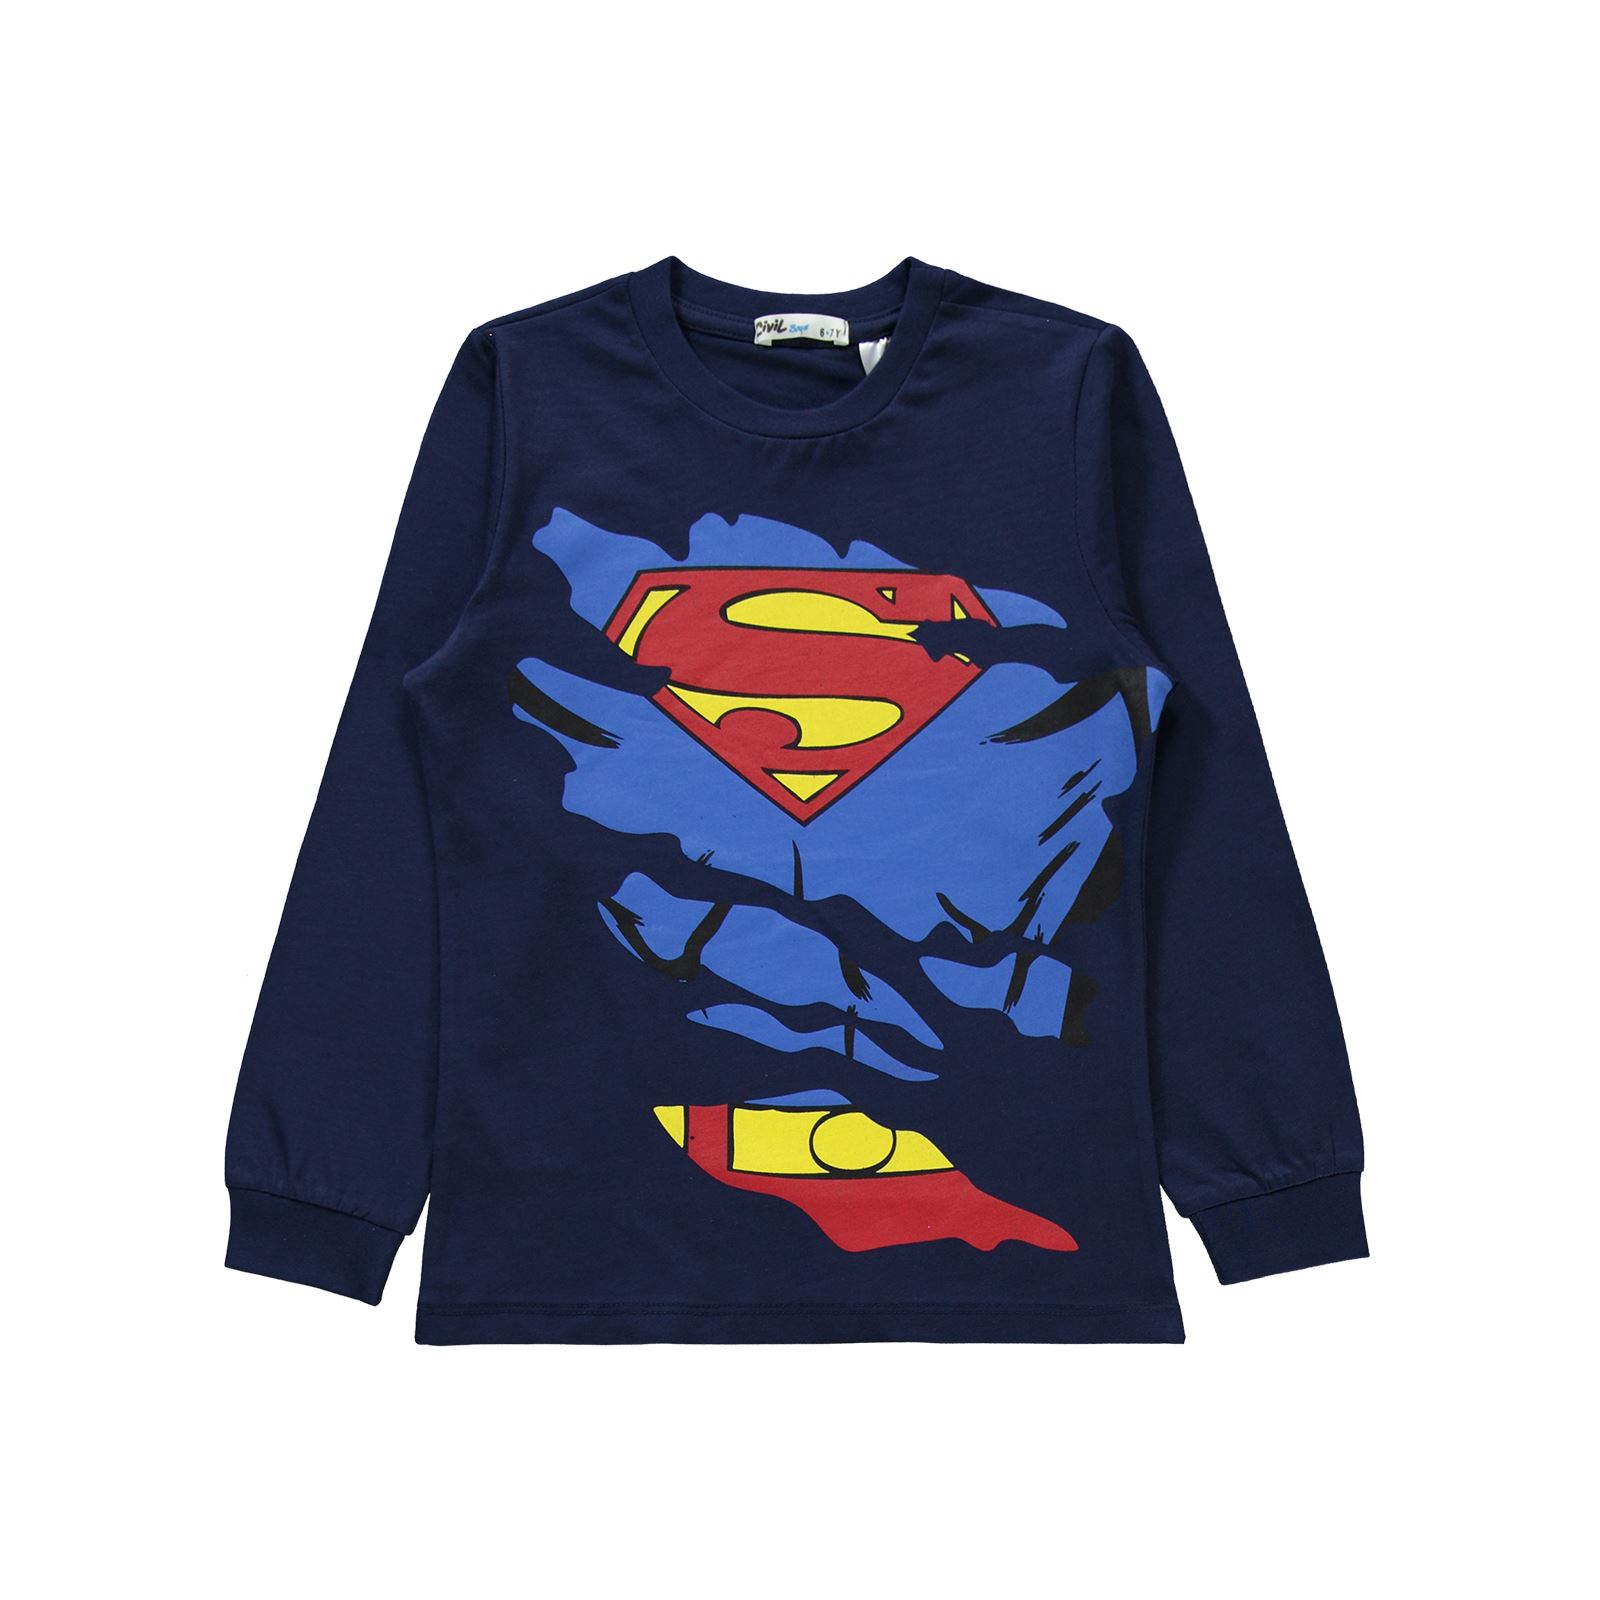 Süperman Erkek Çocuk Pijama Takımı 10-13 Yaş Lacivert